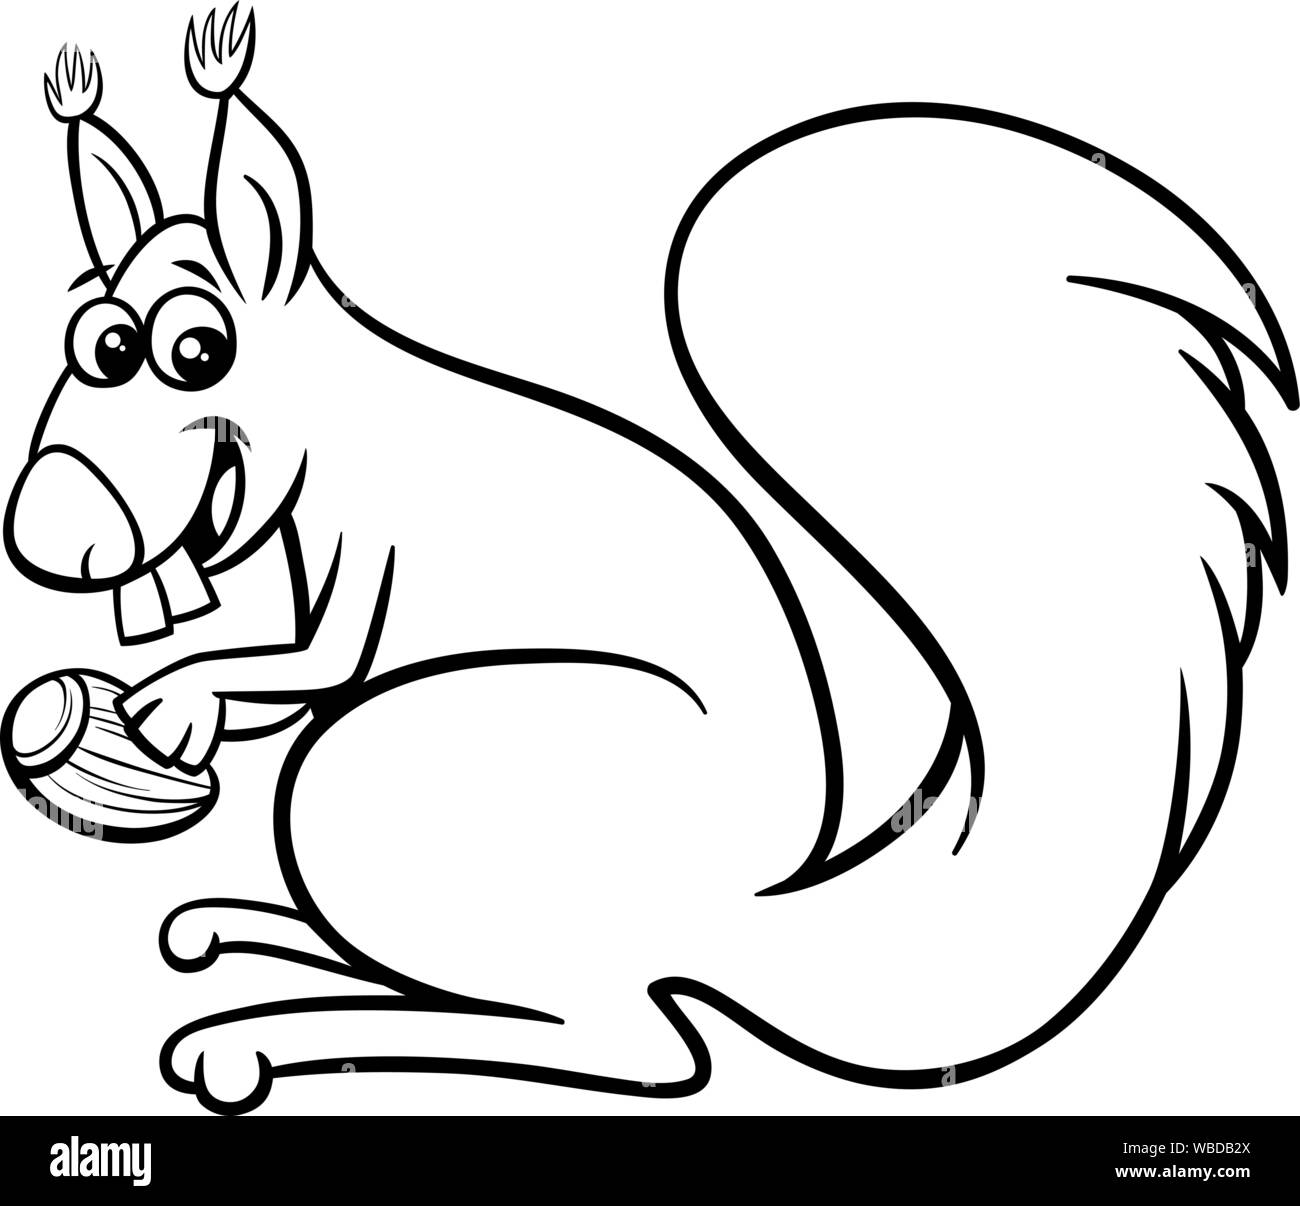 Cartoon noir et blanc Illustration d'Écureuil drôle personnage animal rongeur avec Acorn Page à colorier Illustration de Vecteur